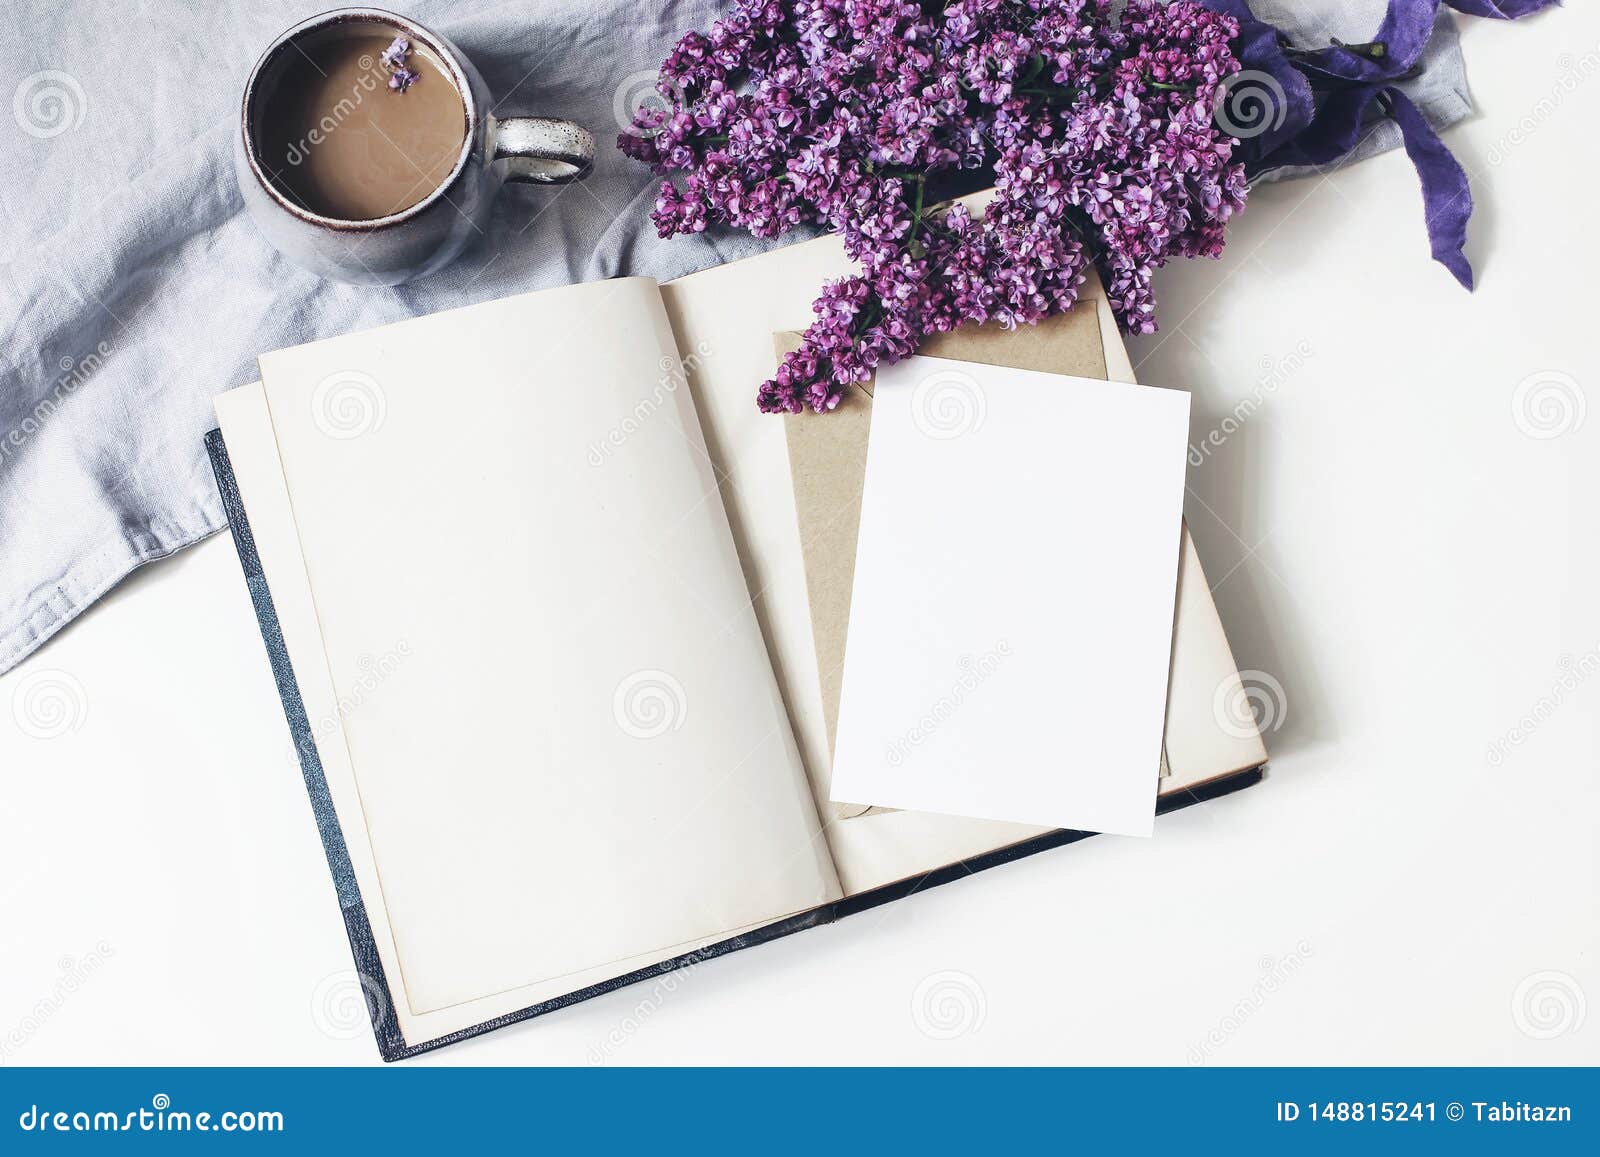 春天女性场面 花卉构成束紫色和白色淡紫色花 旧书 咖啡和亚麻布库存图片 图片包括有框架 杯子